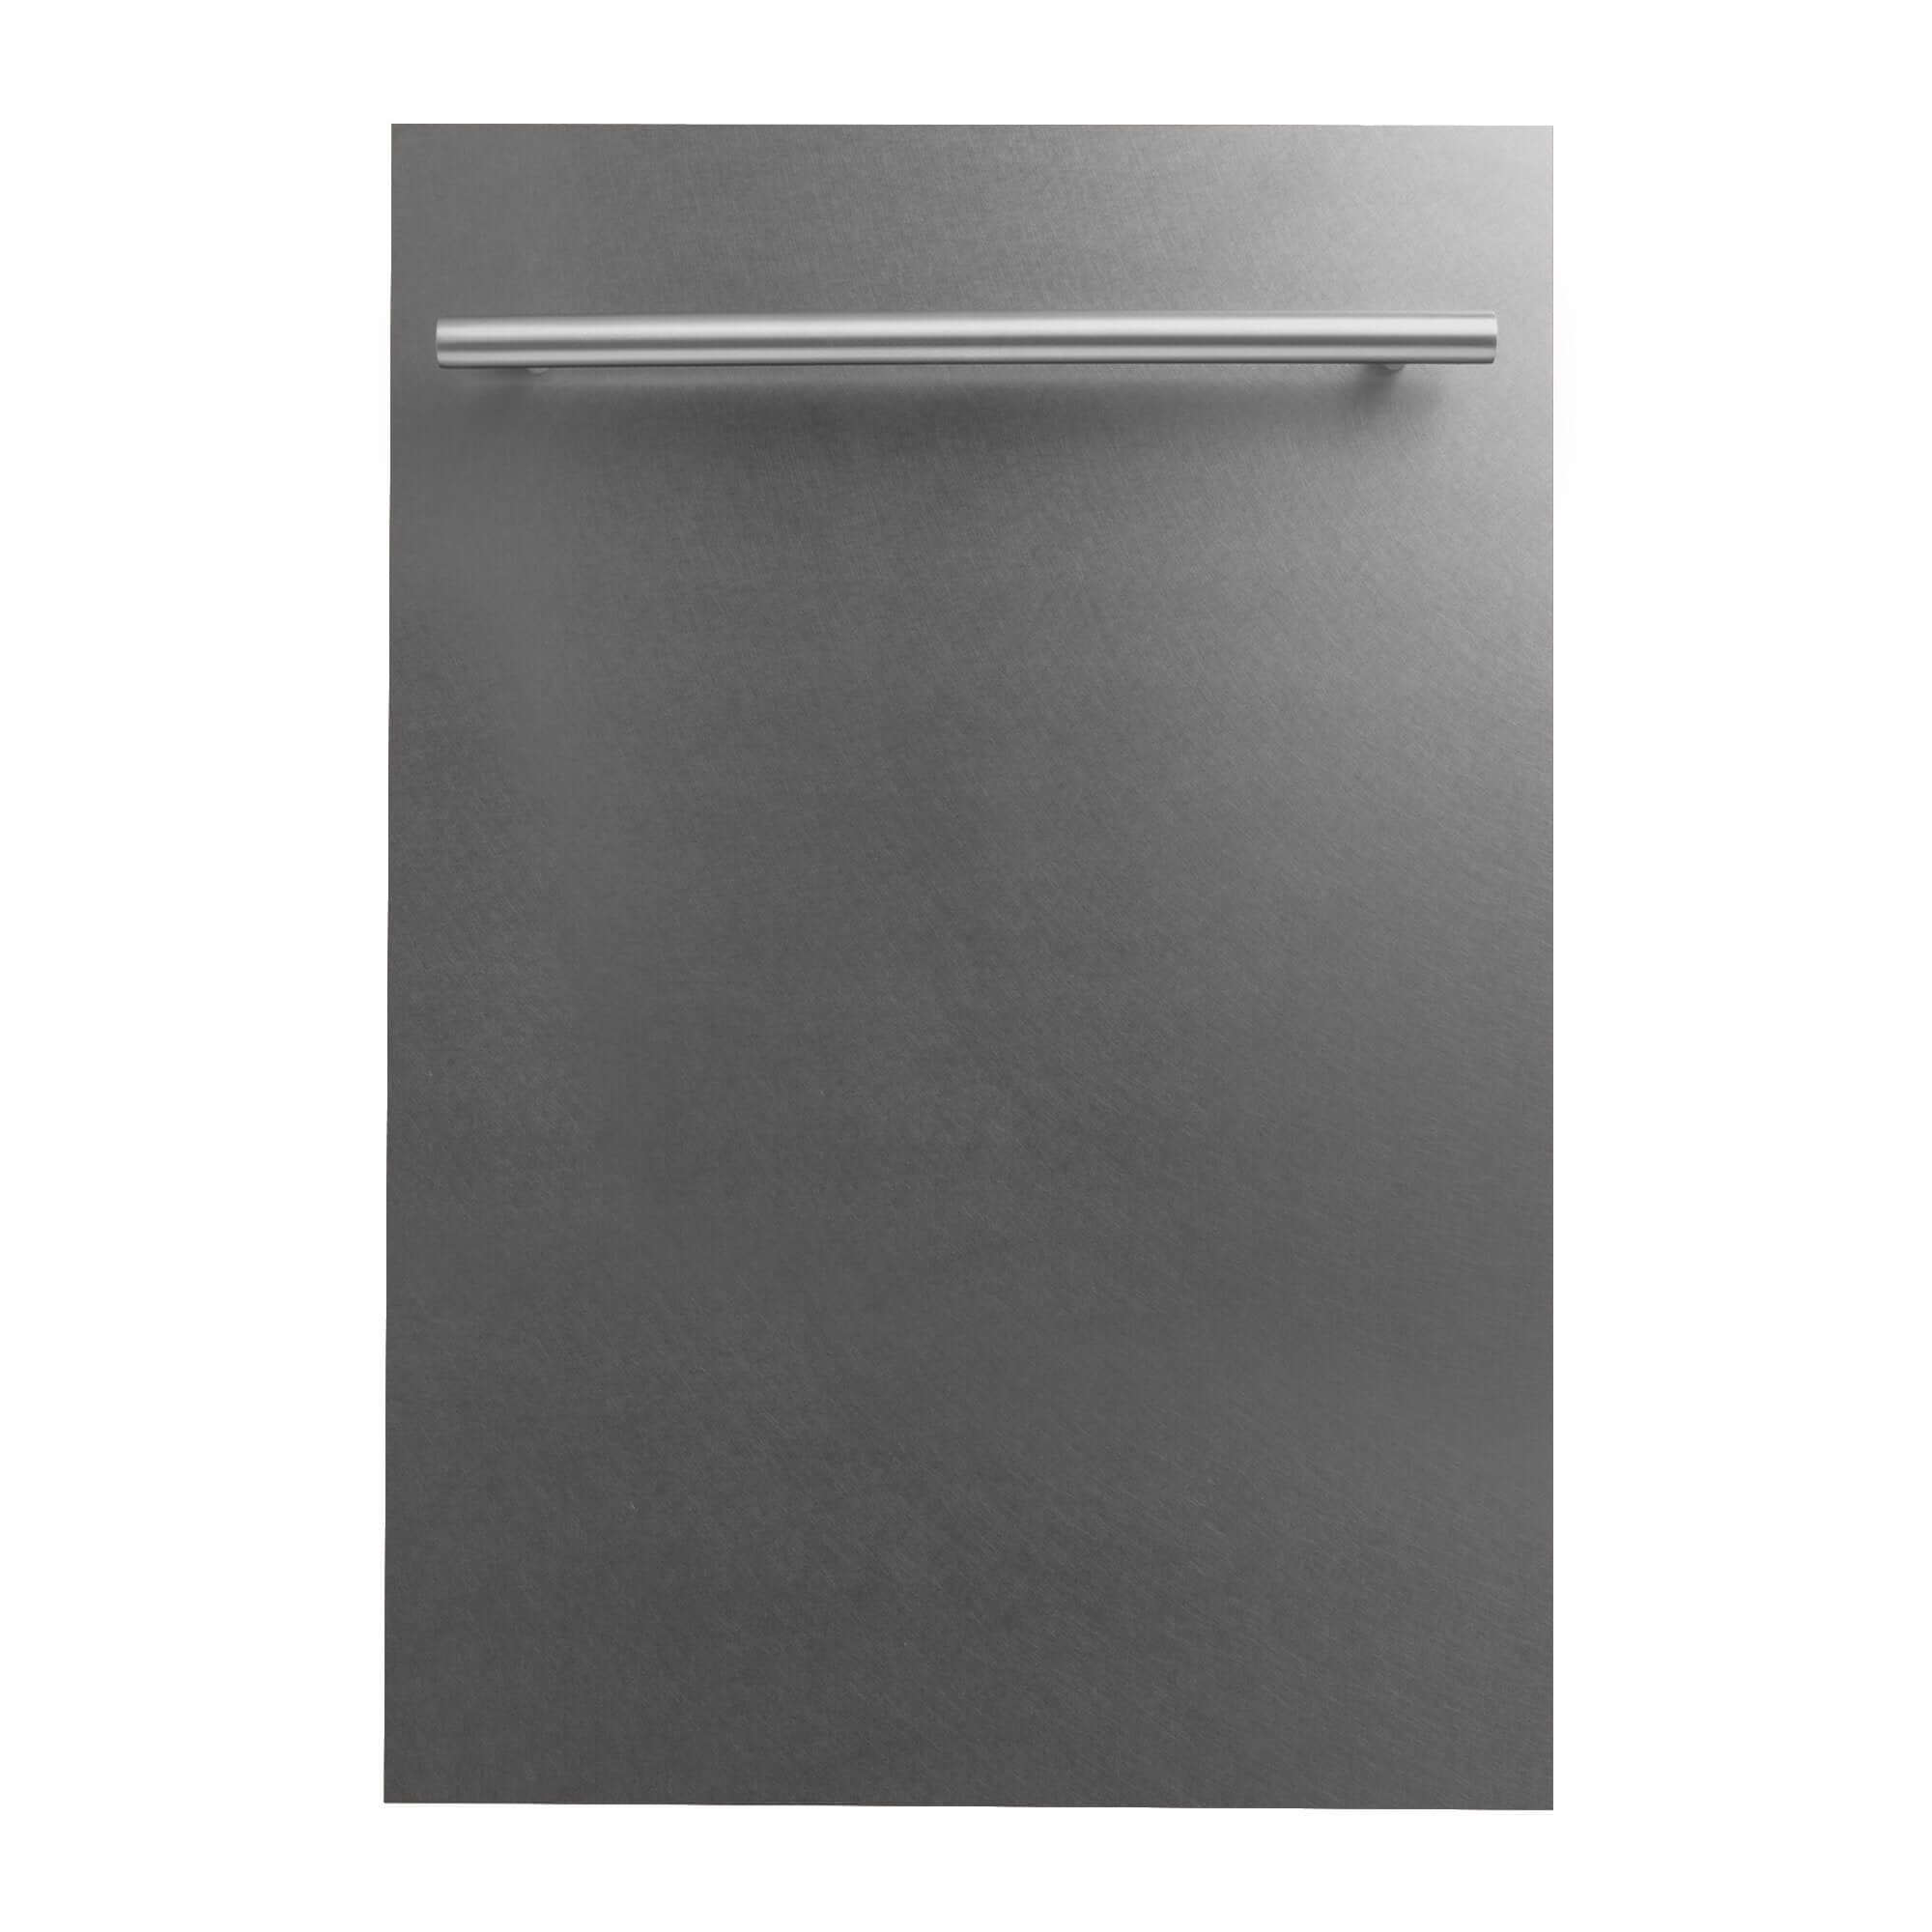 ZLINE 18" Dishwasher Panel with Modern Handle - DuraSnow Stainless Steel